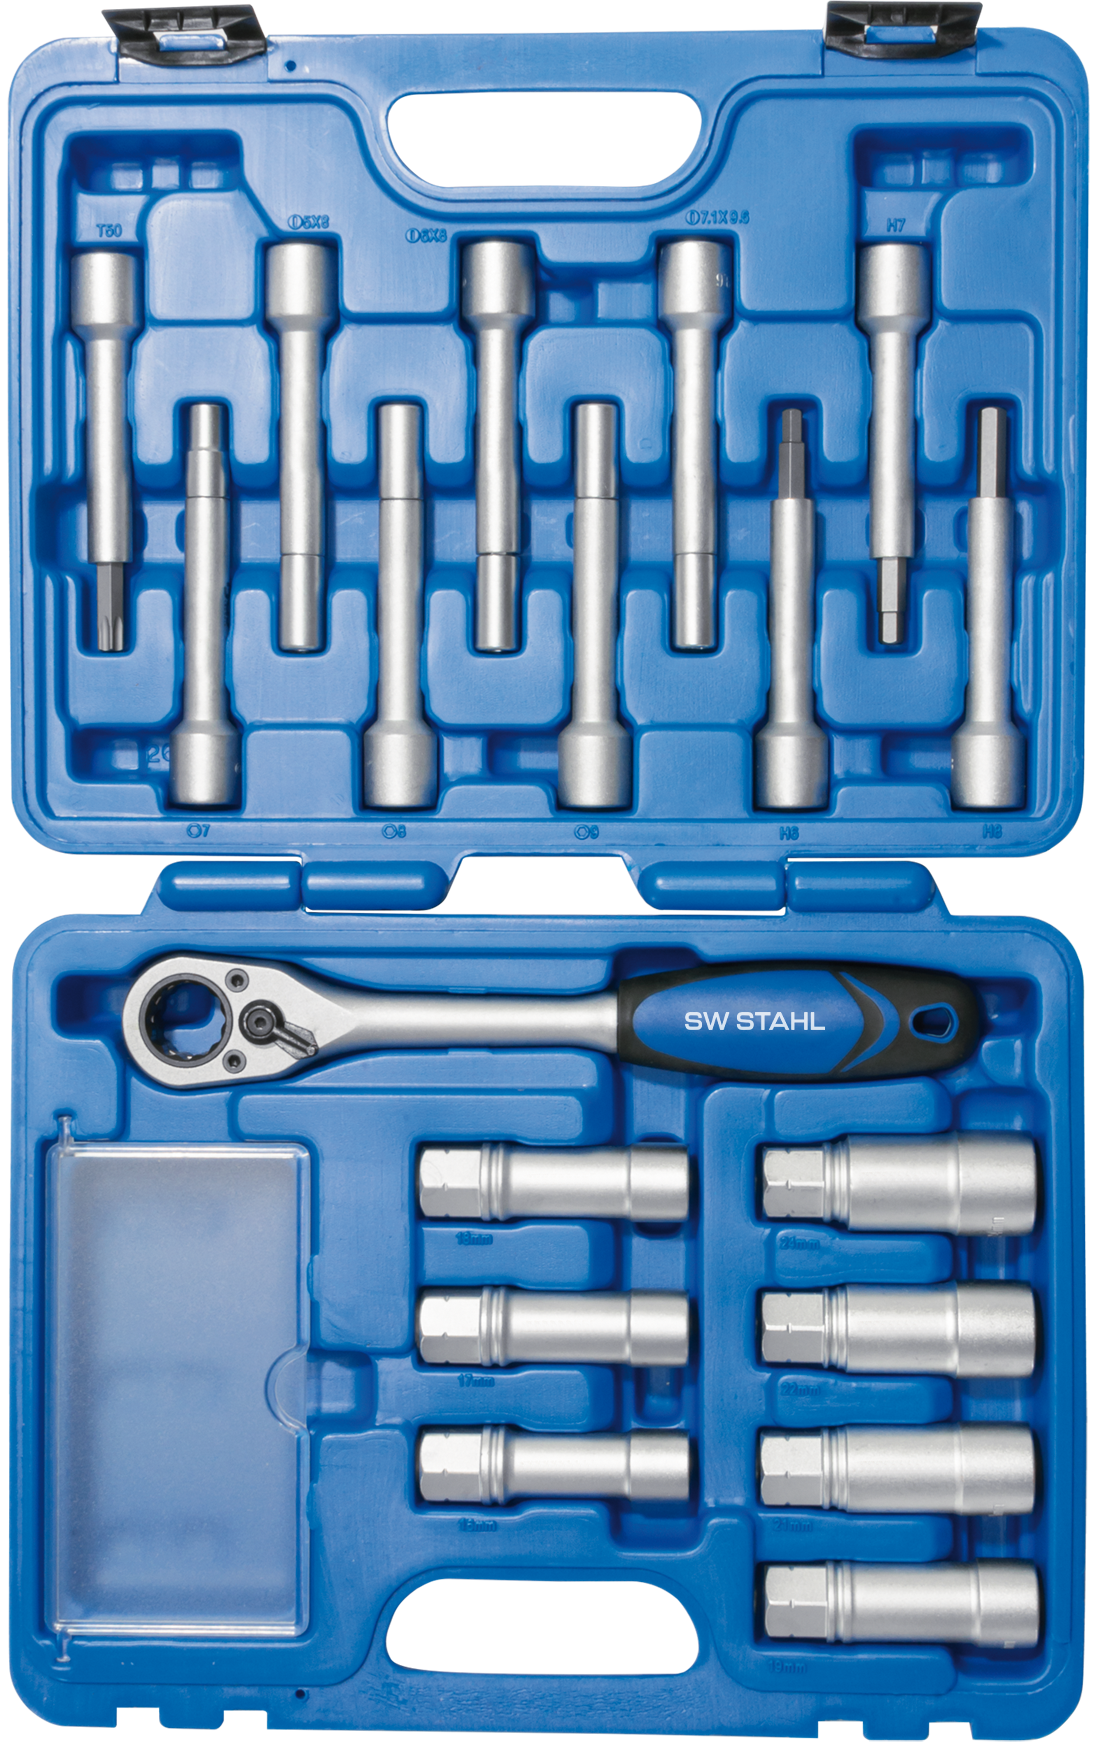 Bremssattel Spezialeinsatz Werkzeug von SW-STAHL - Professionelle Qualität  für SAF und Knorr Sättel, Spezialwerkzeuge, Ersatz- und Verschleißteile, Werkzeuge